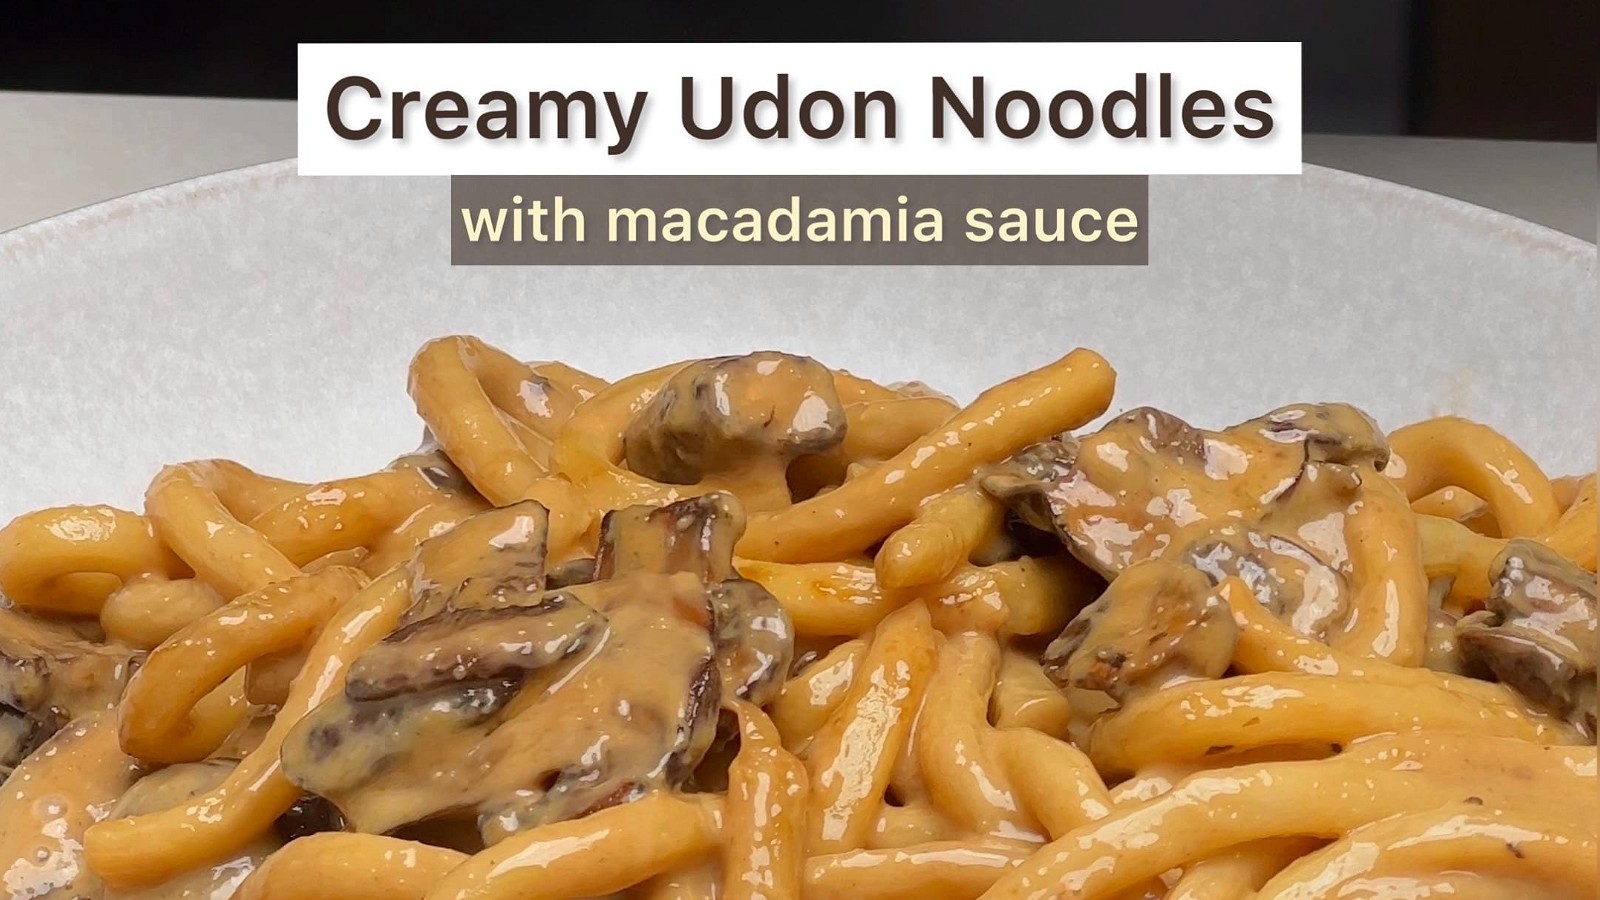 Image of Creamy Macadamia Udon Noodles